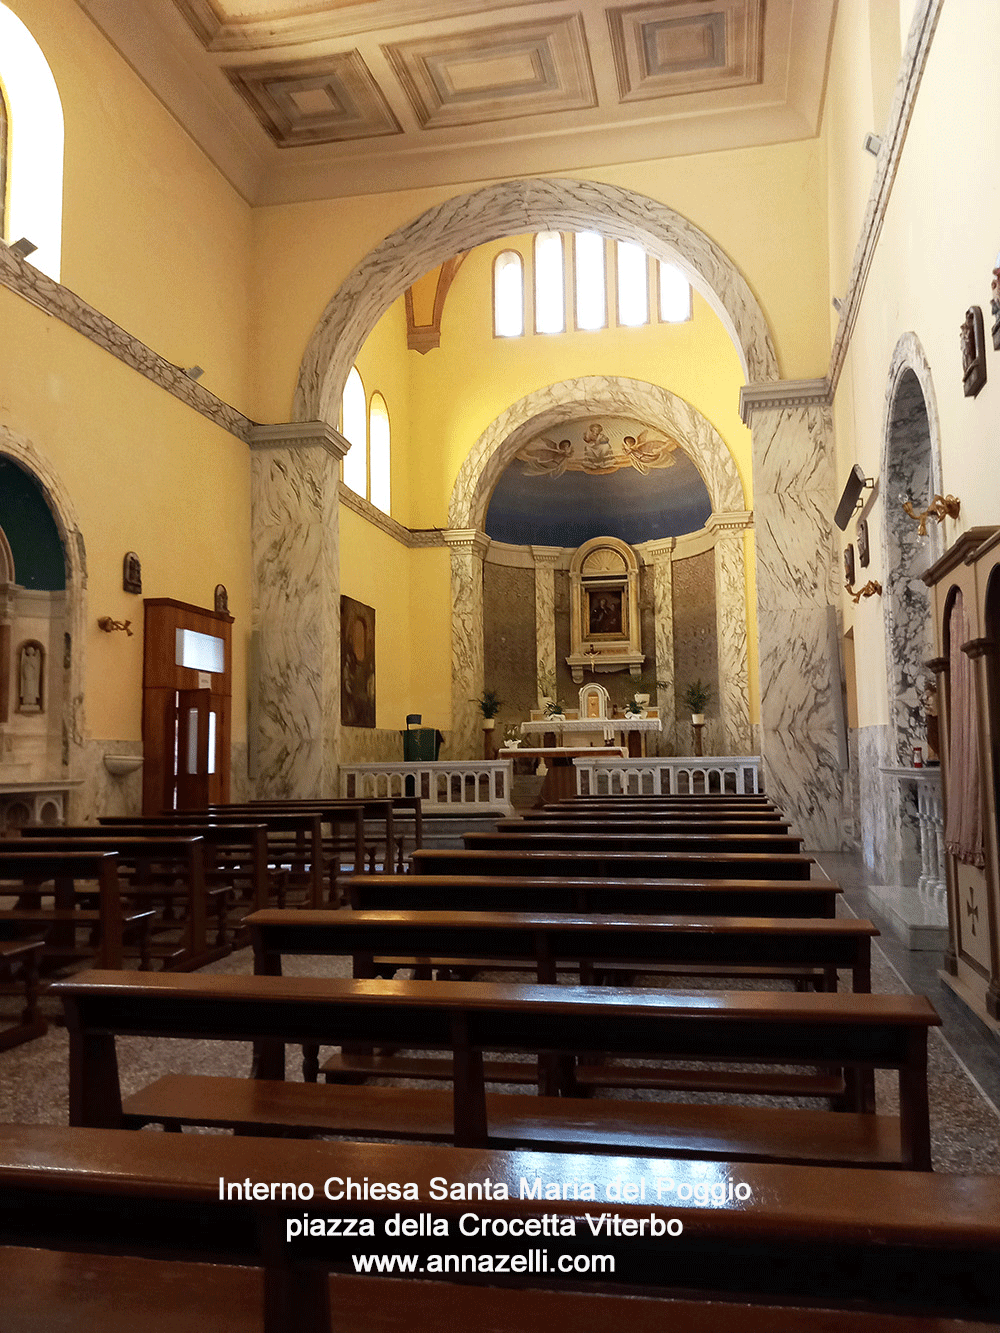 interno chiesa santa maria del poggio piazza della crocetta viterbo info e foto anna zelli